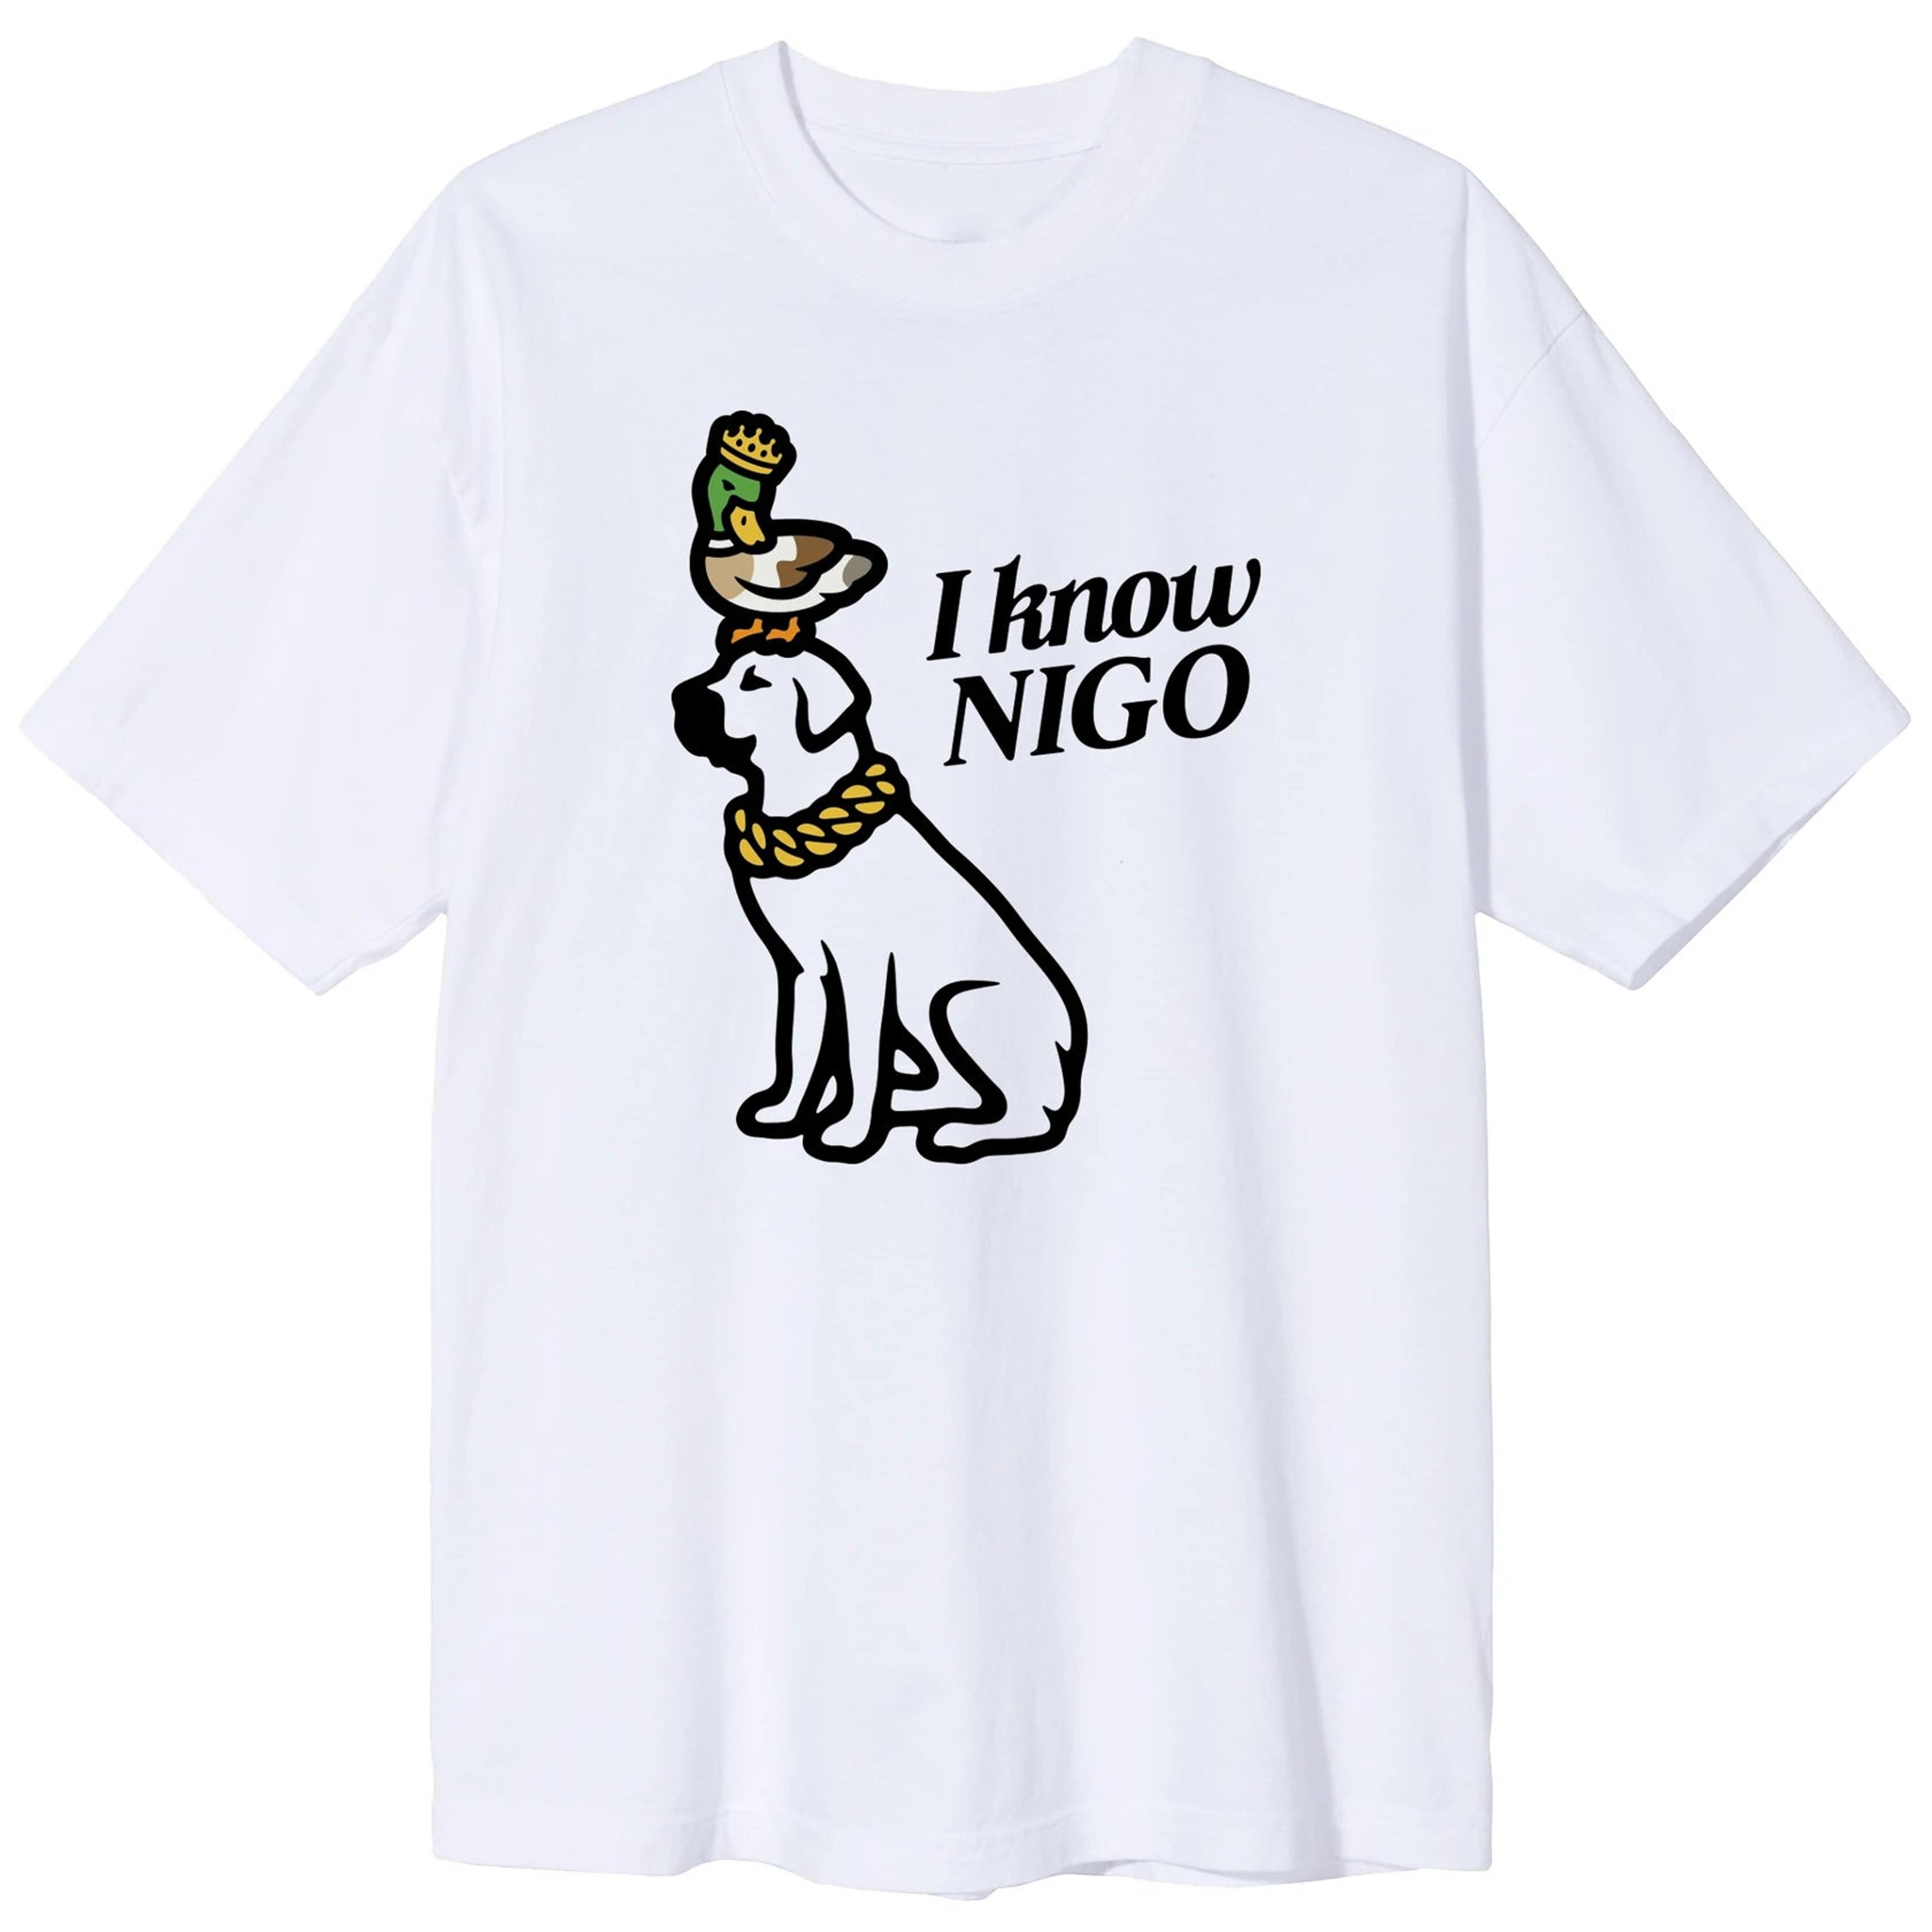 Alternate View 1 of I Know Nigo Dog T-Shirt - White